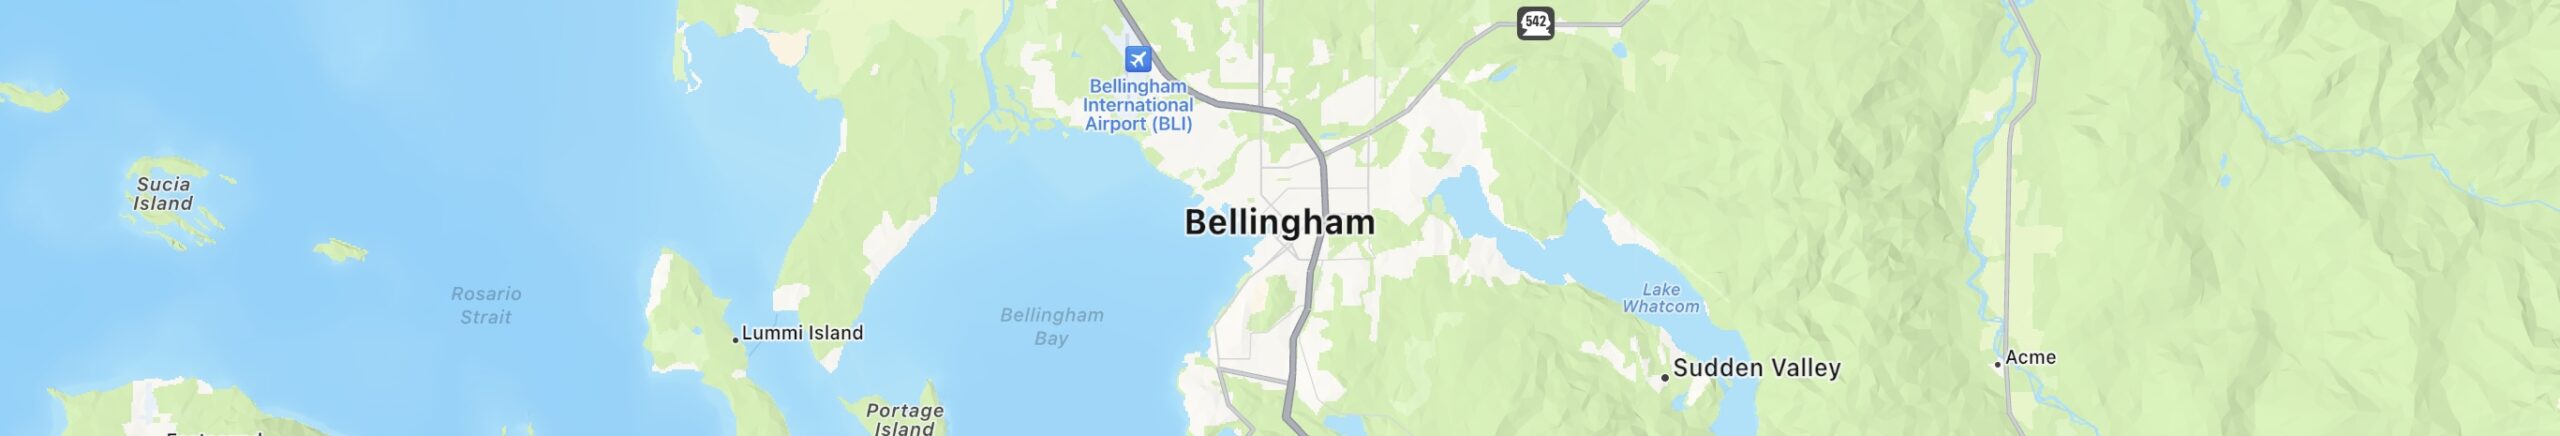 Bellingham, WA Map